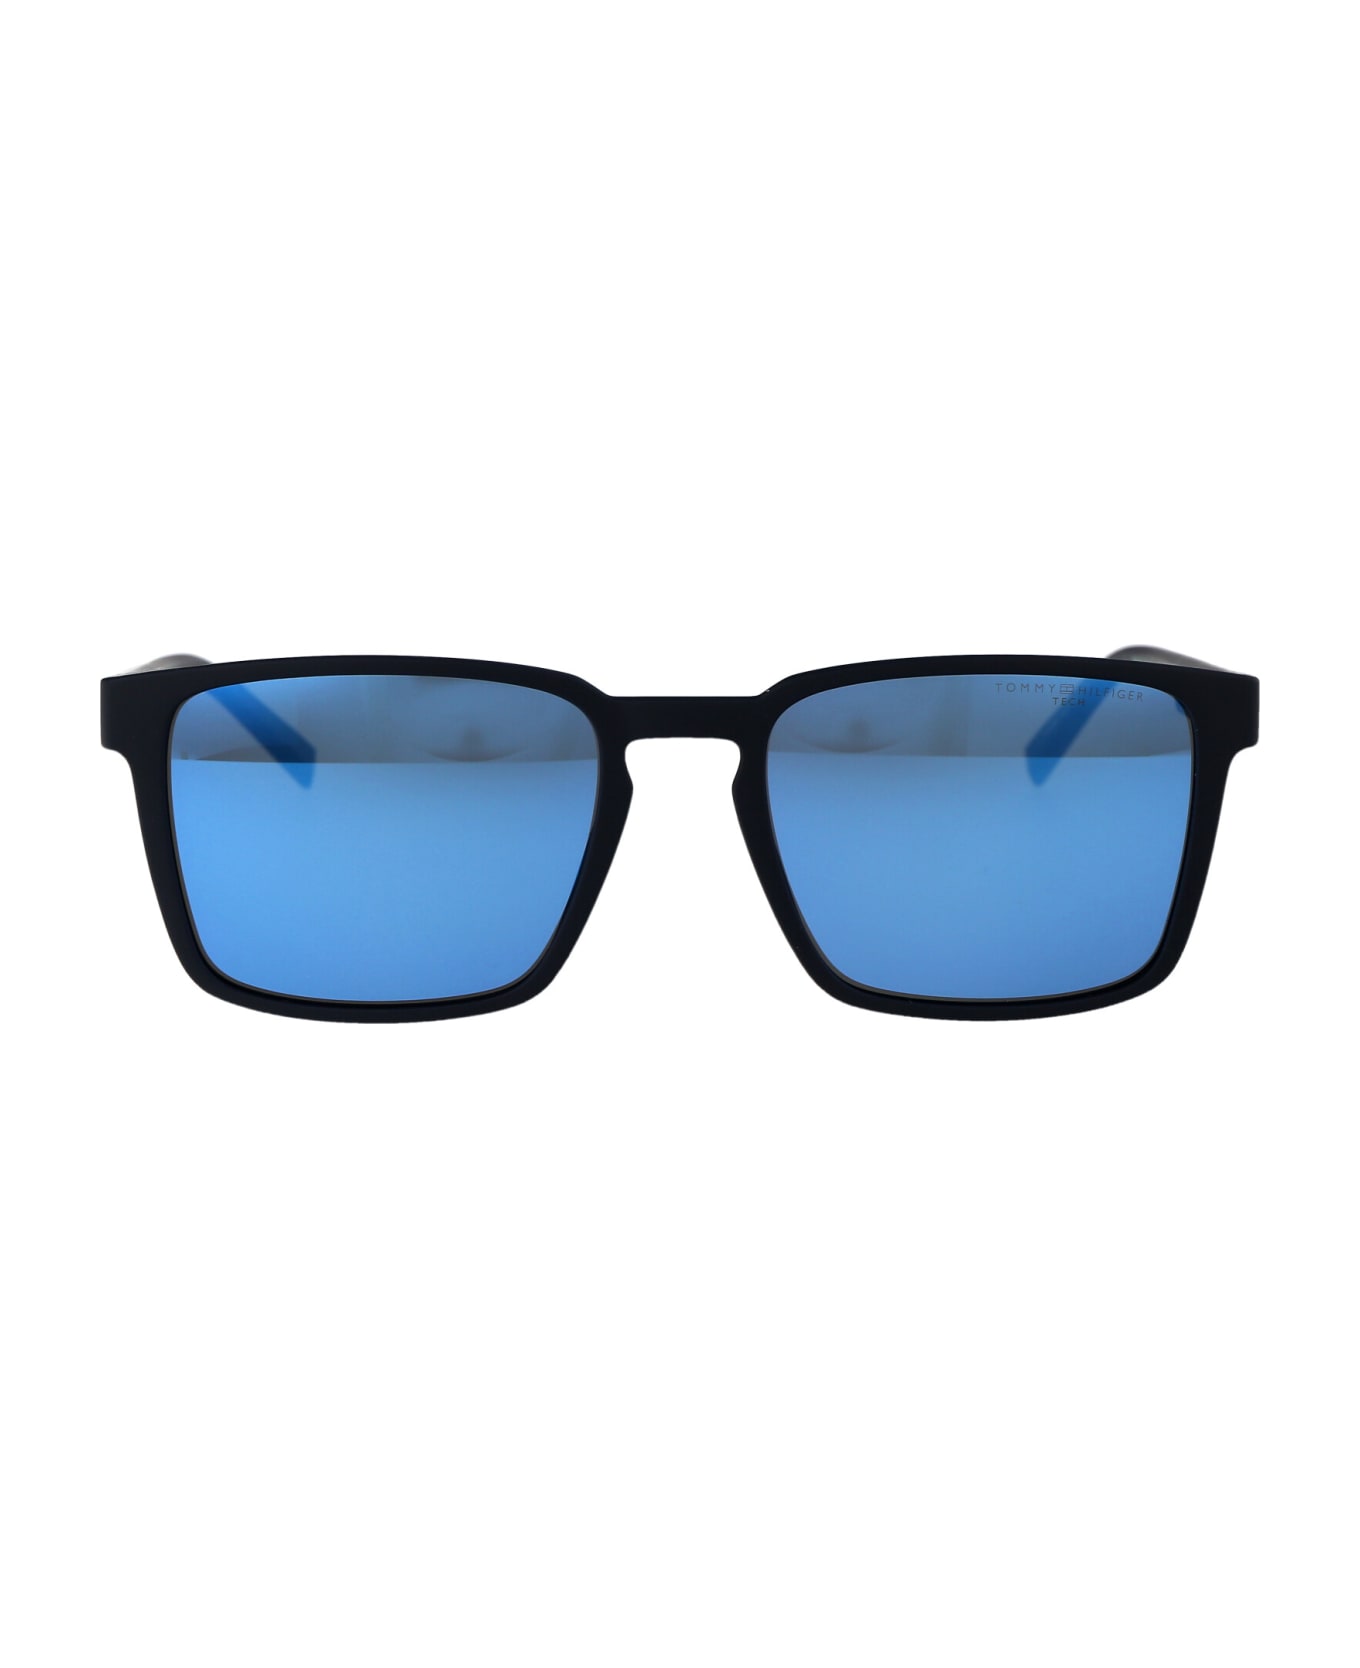 Tommy Hilfiger Th 2088/s Sunglasses - FLLVI MTT BLUE M